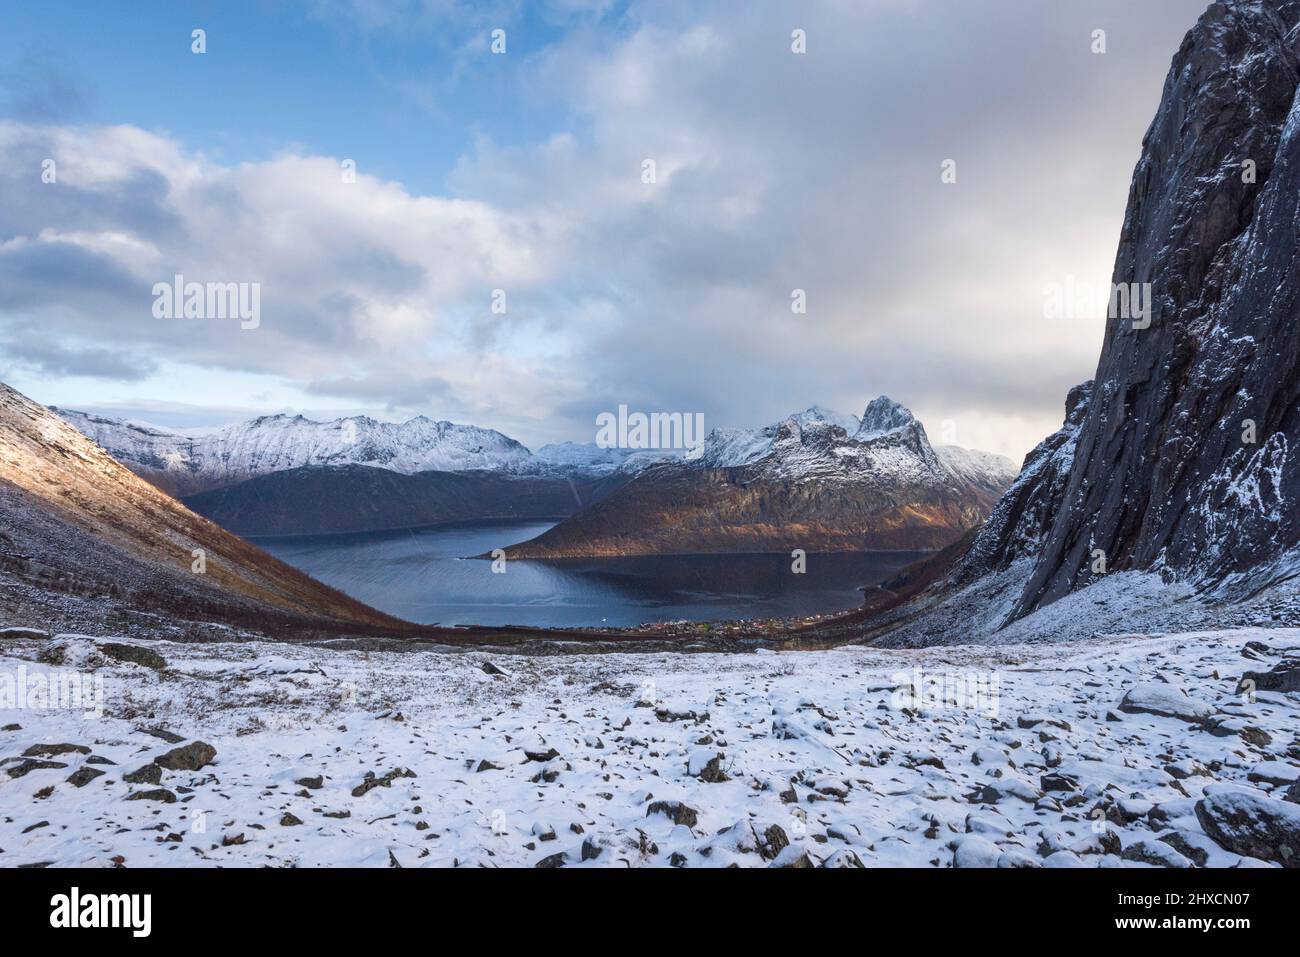 Impressions d'automne de l'île norvégienne Senja au-dessus du cercle arctique, la Scandinavie pure et la Norvège, randonnée à Hesten pour la vue imprenable sur la montagne de Segla 639 m et les fjords environnants, Banque D'Images